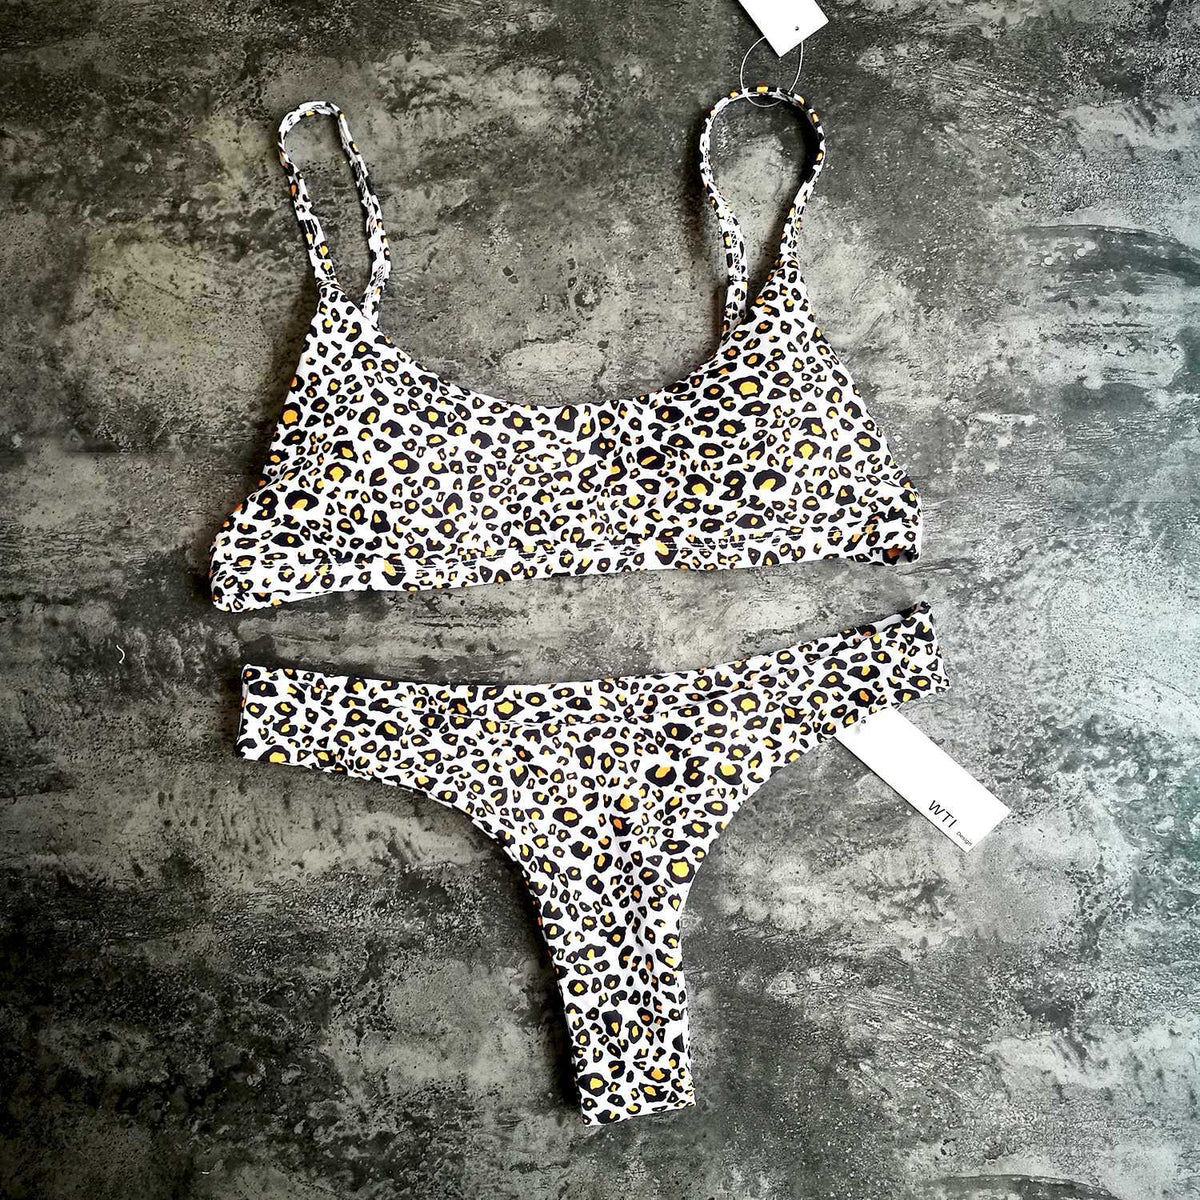 Leopard Print Crop Top High Cut Bikini Set - worthtryit.com